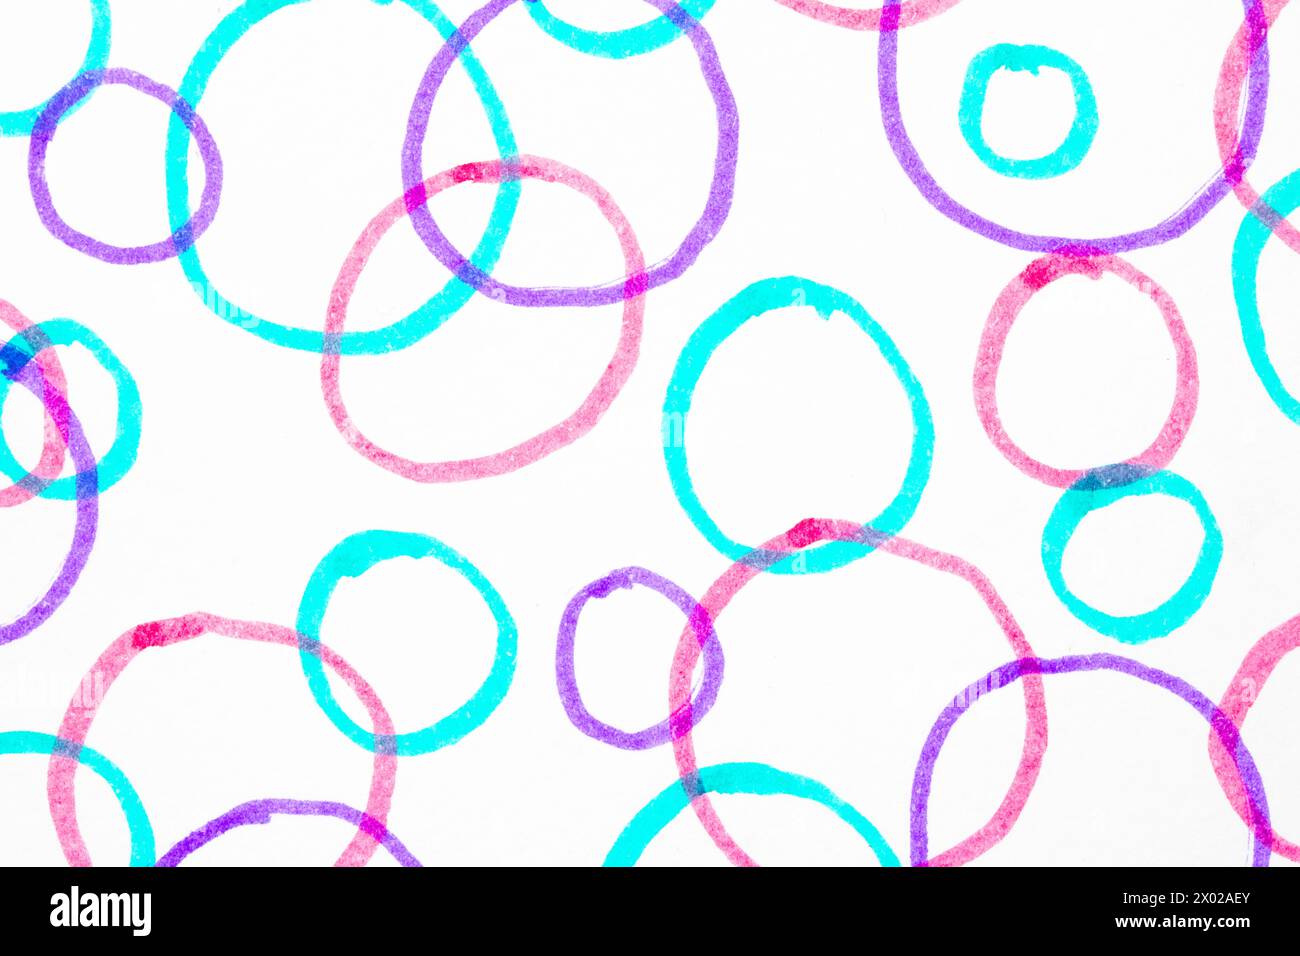 Eine niedliche farbige Hand gezeichnete Luftblasen Kreise in Filz Stift einfacher Hintergrund auf weiß Stockfoto